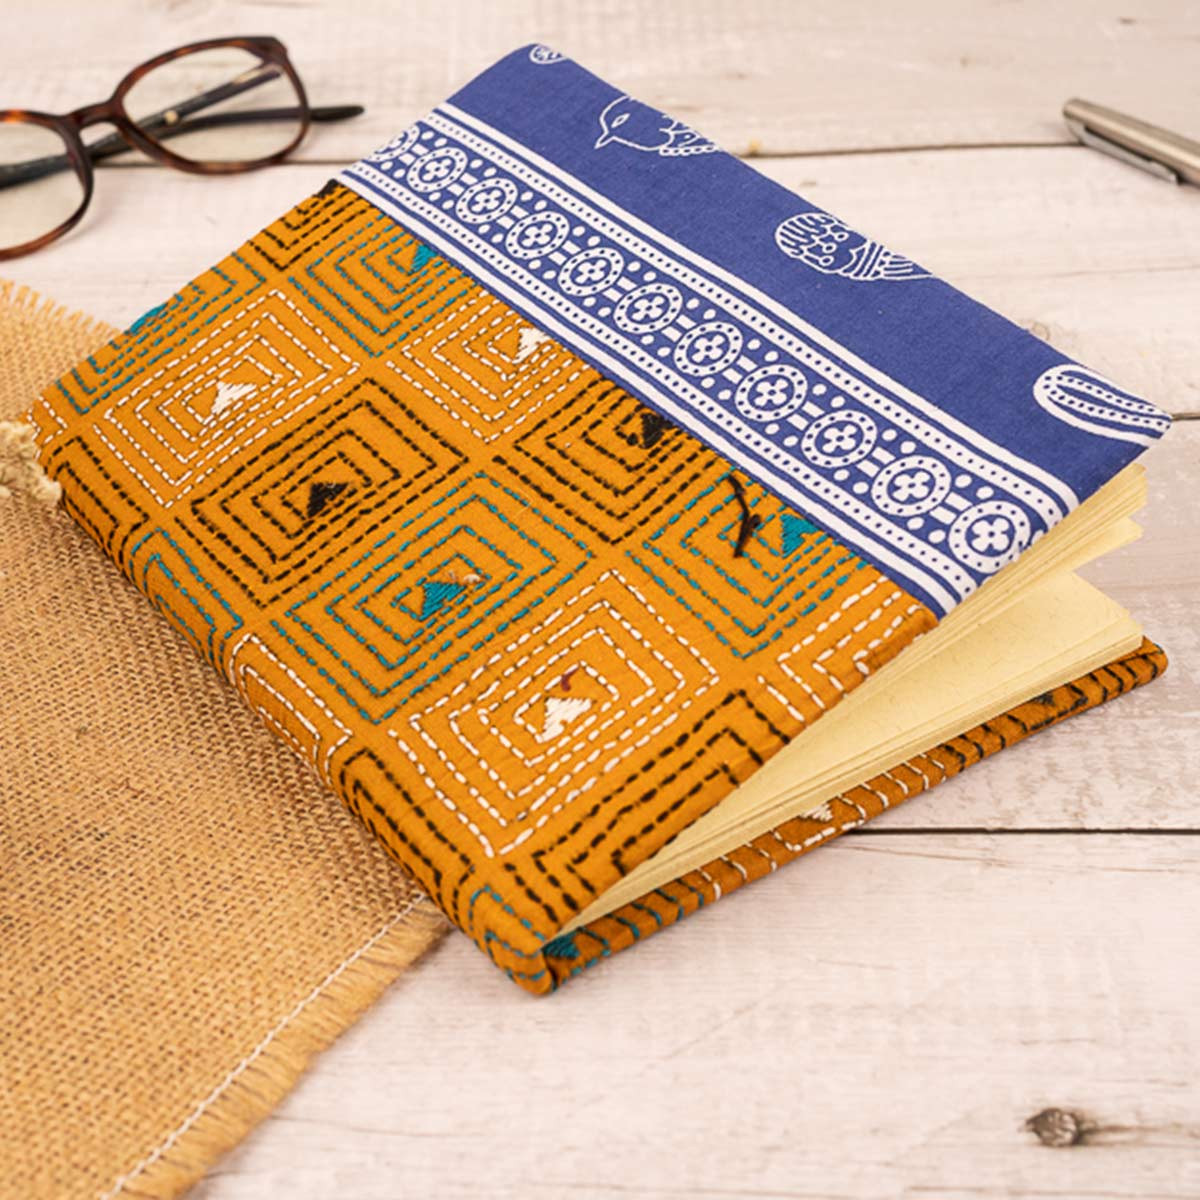 Kantha-stitched Notepad (orange and blue)